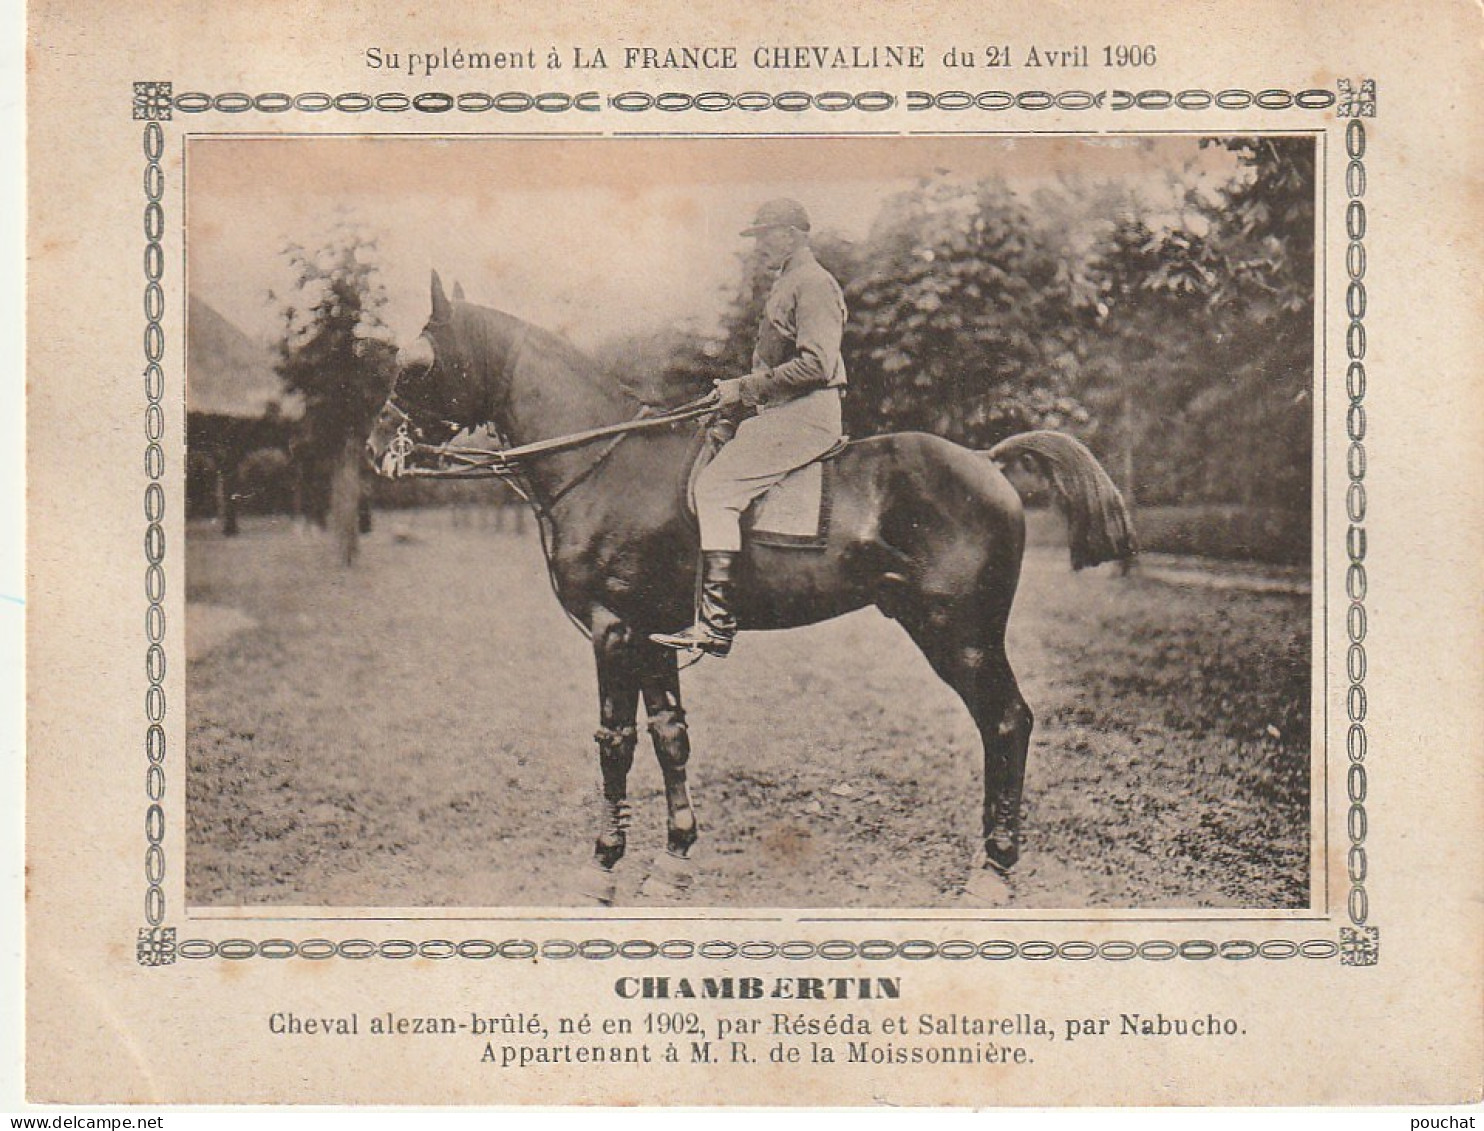 AA+ - " CHAMBERTIN " - CHEVAL ALEZAN BRULE APPARTENANT A M. R. DE LA MOISSONNIERE - SUPPL. FRANCE CHEVALINE AVRIL 1906 - Reitsport